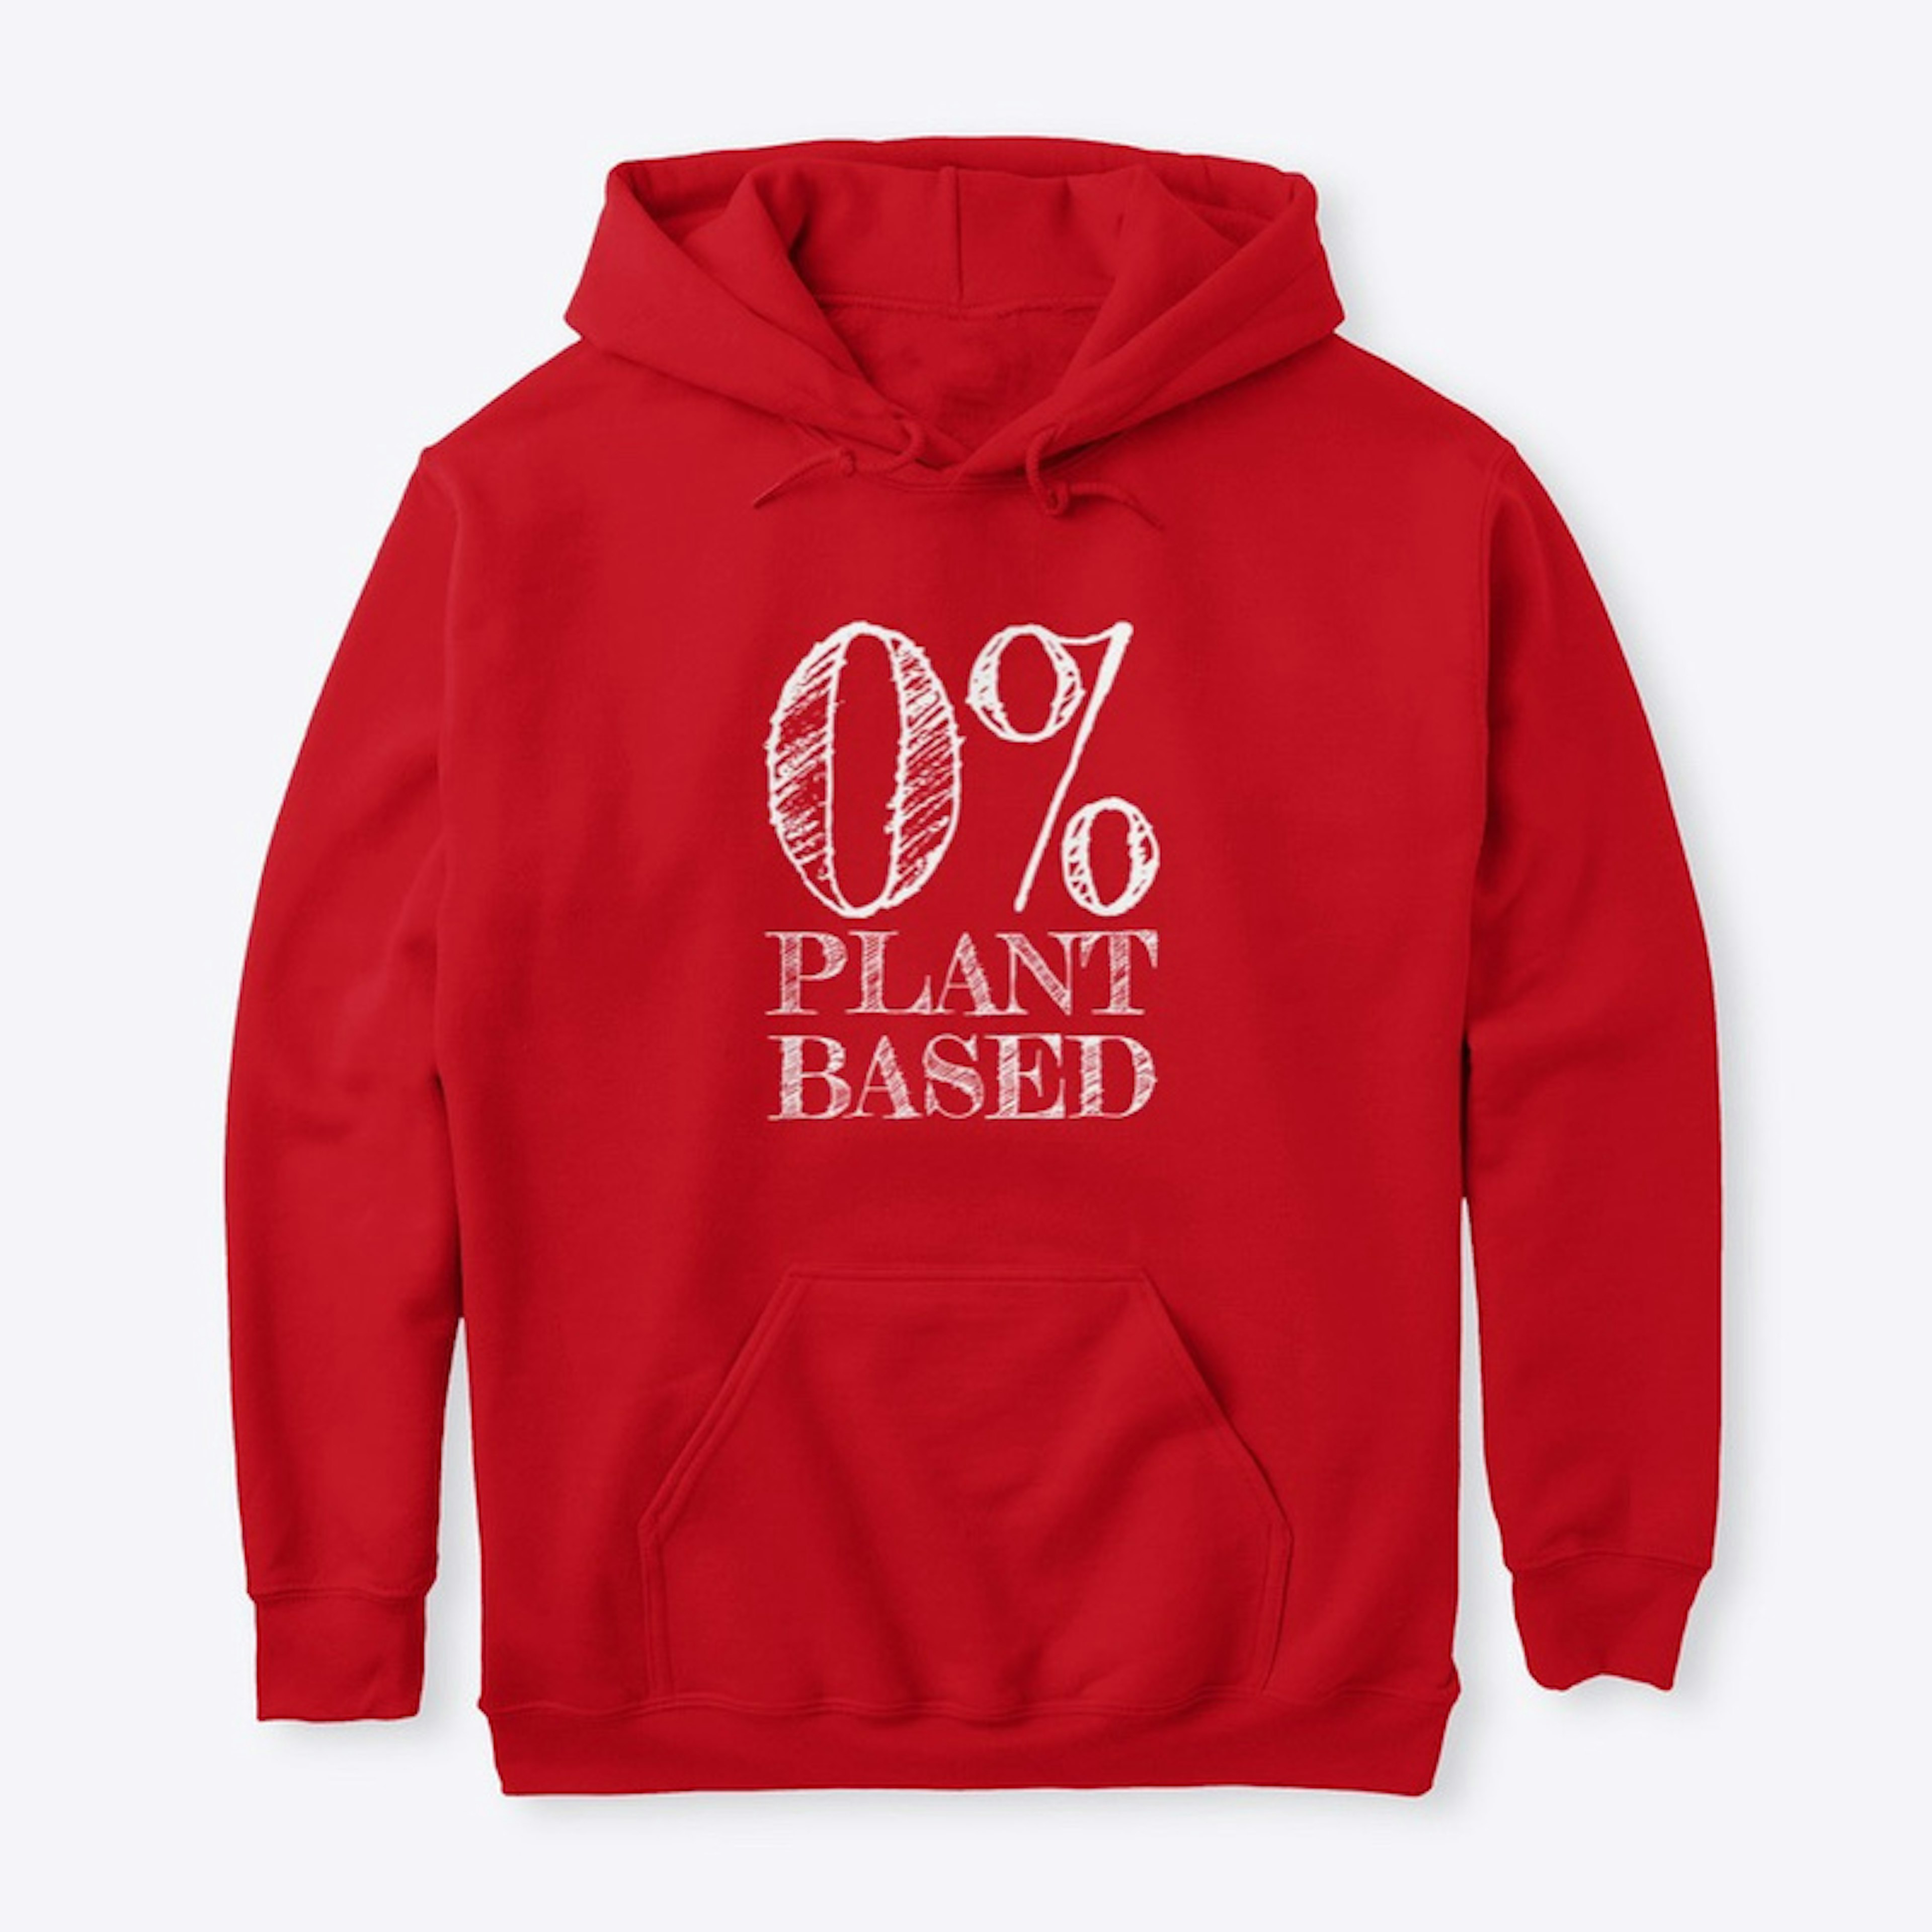 0% Plant Based Hoodie